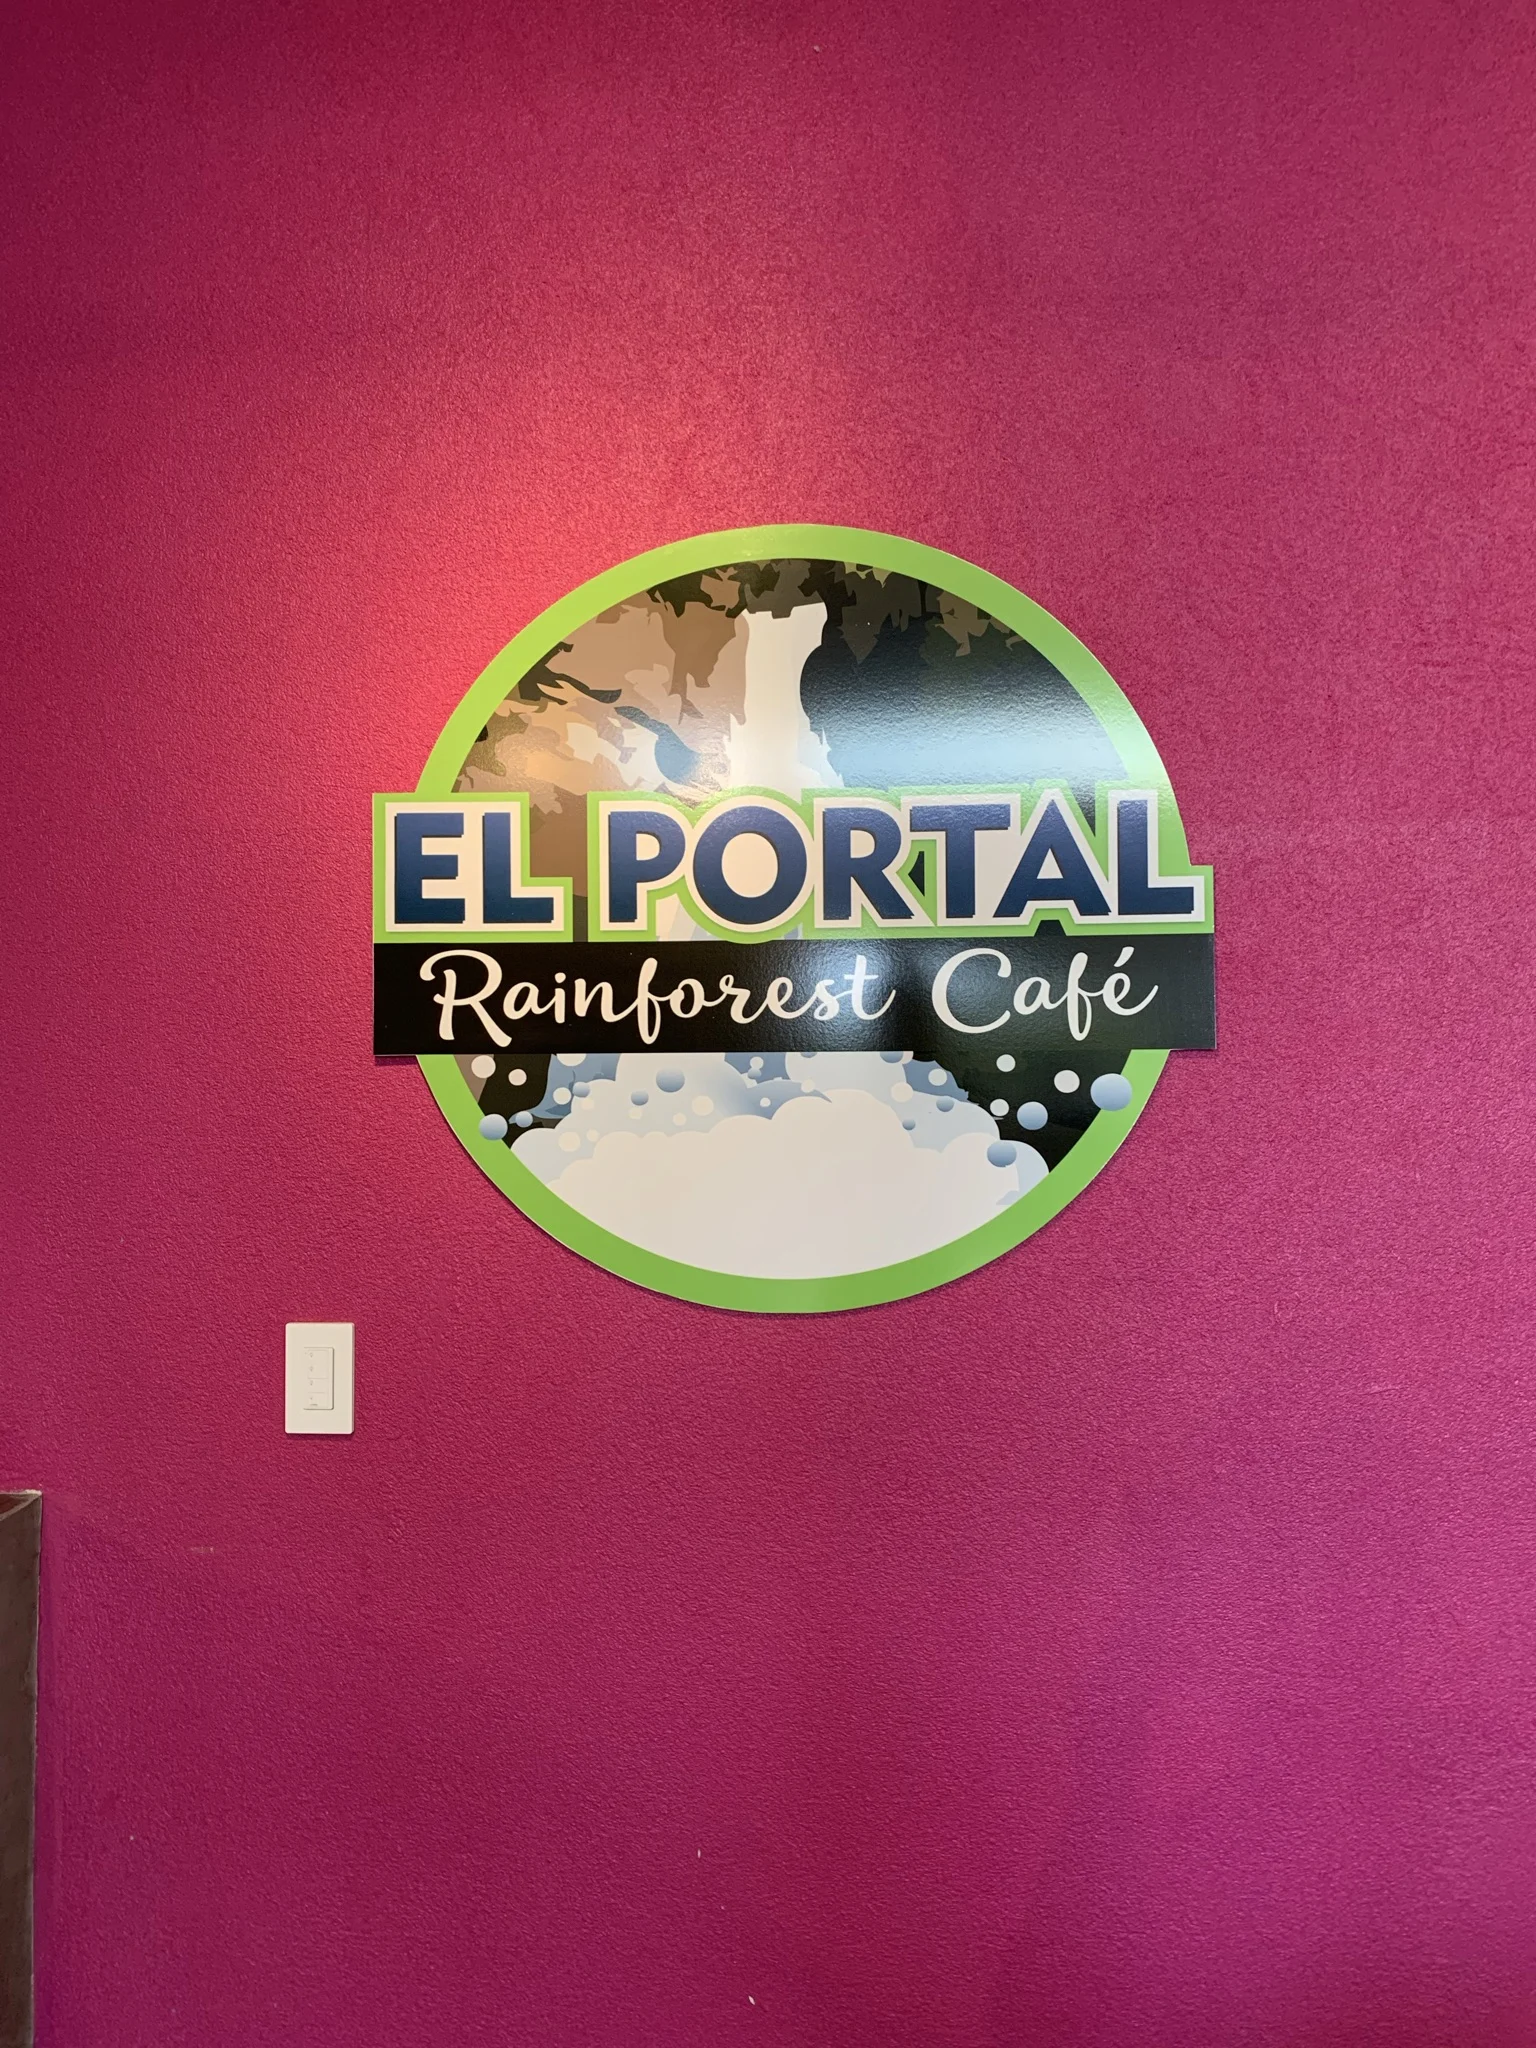 el portal rainforest cafe sign